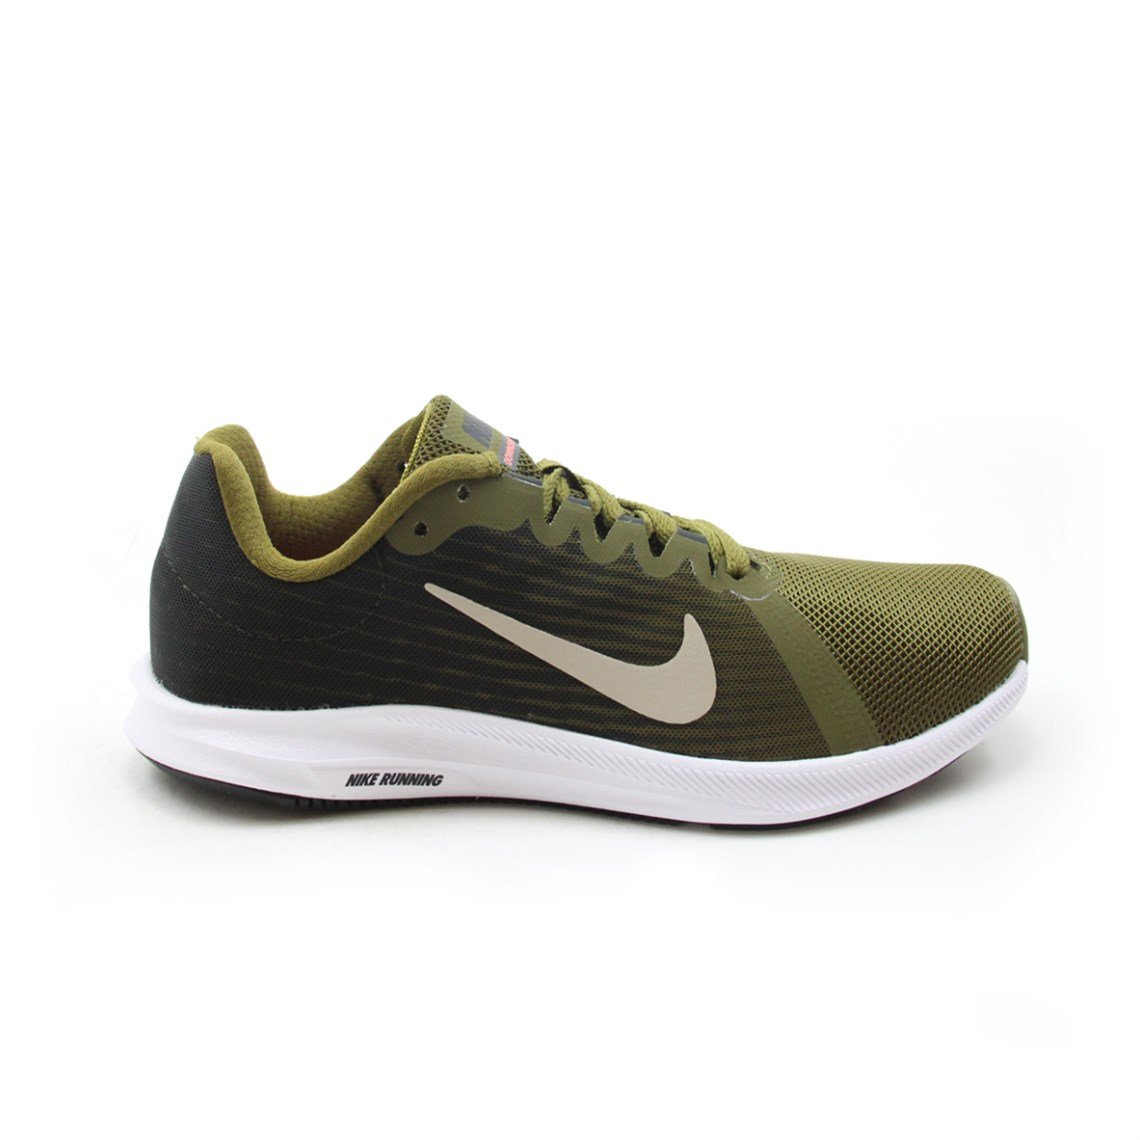 Nike Günlük Koşu Yürüyüş Haki Yeşil Unisex Spor Ayakkabı 908994-301